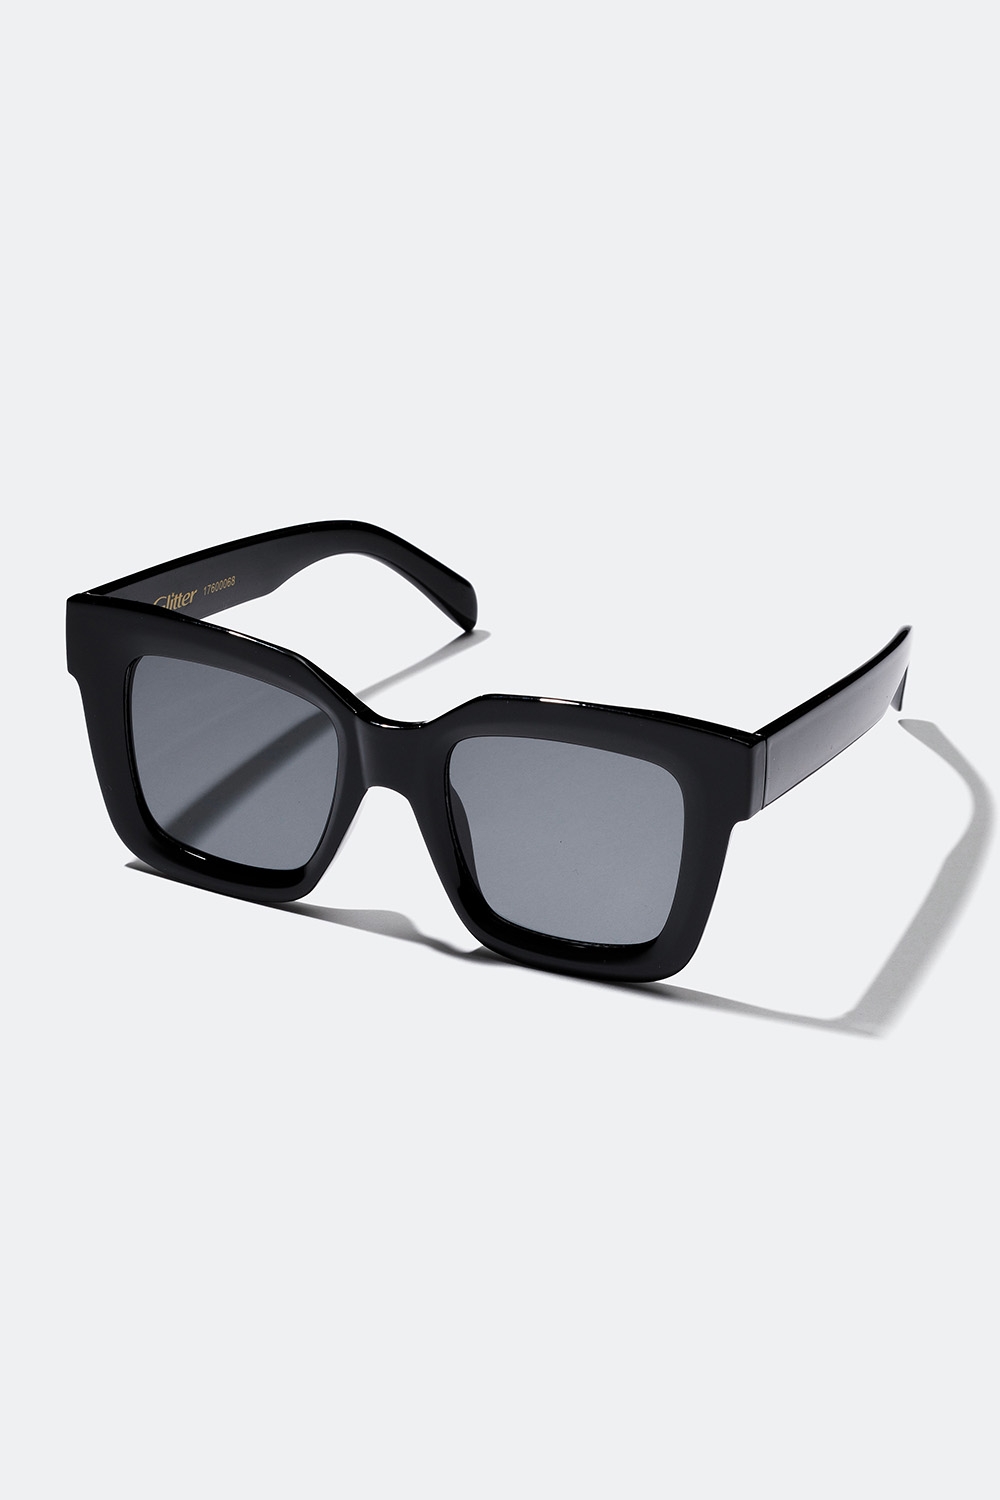 Store, svarte solbriller med firkantet design i gruppen Accessories / Solbriller hos Glitter (176000689000)